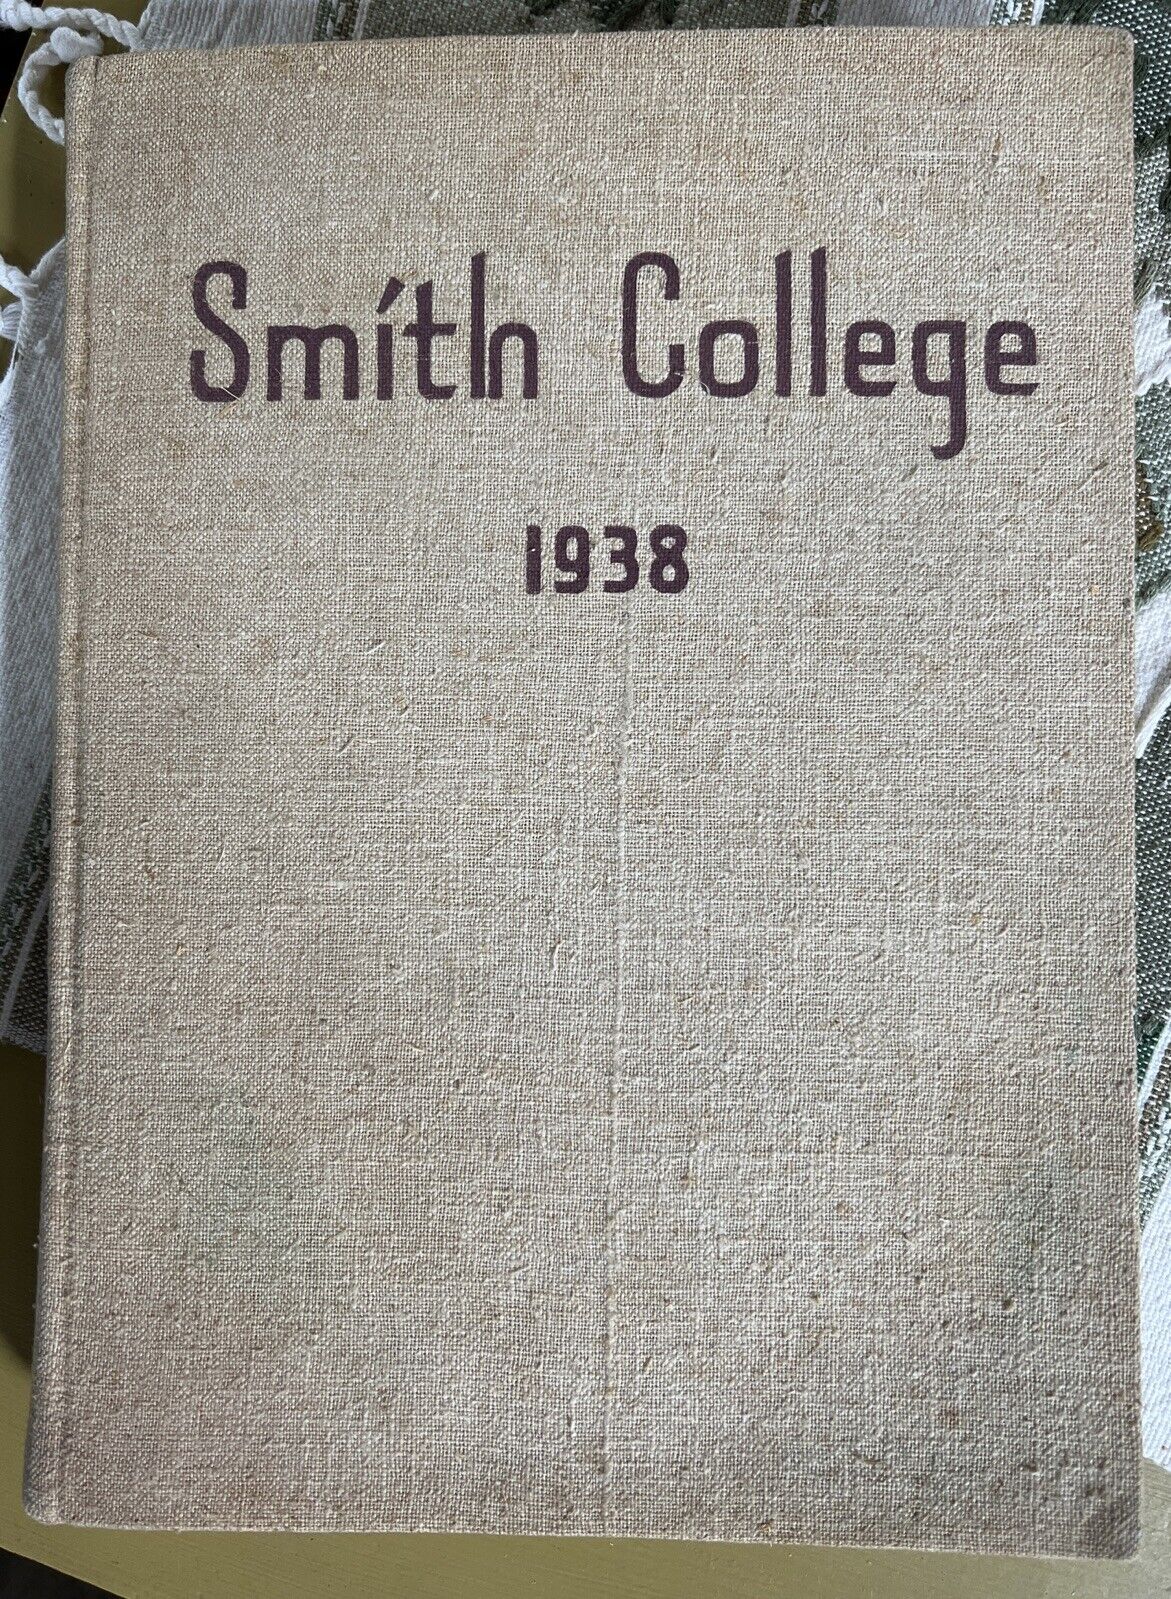 Smith College Yearbook, 1938 Northampton, Massachusetts, MA